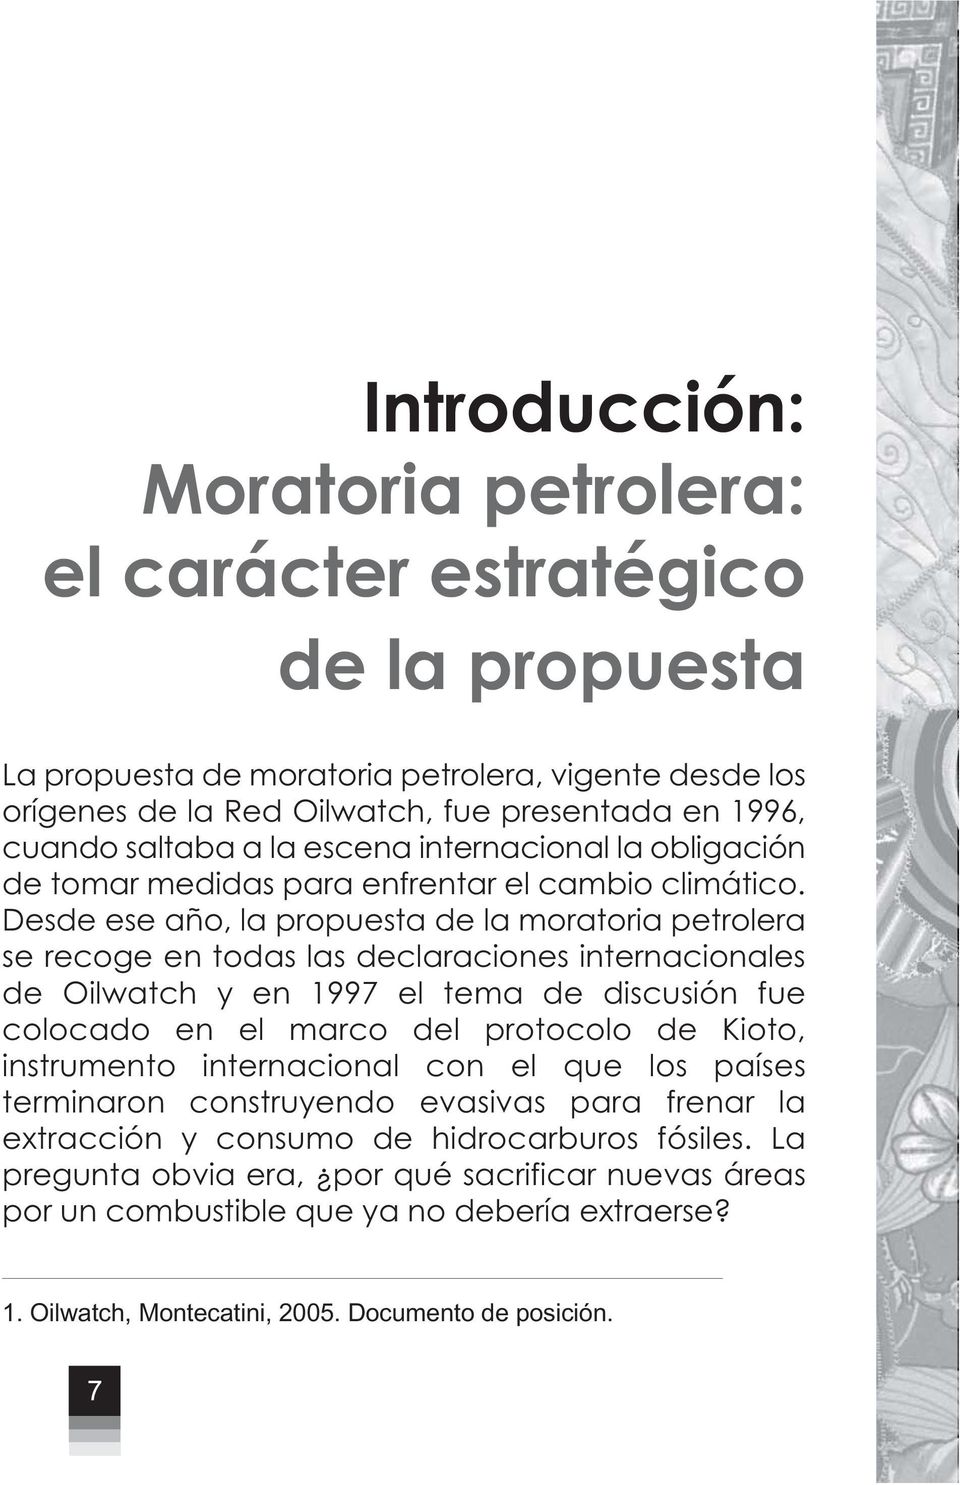 Desde ese año, la propuesta de la moratoria petrolera se recoge en todas las declaraciones internacionales de Oilwatch y en 1997 el tema de discusión fue colocado en el marco del protocolo de